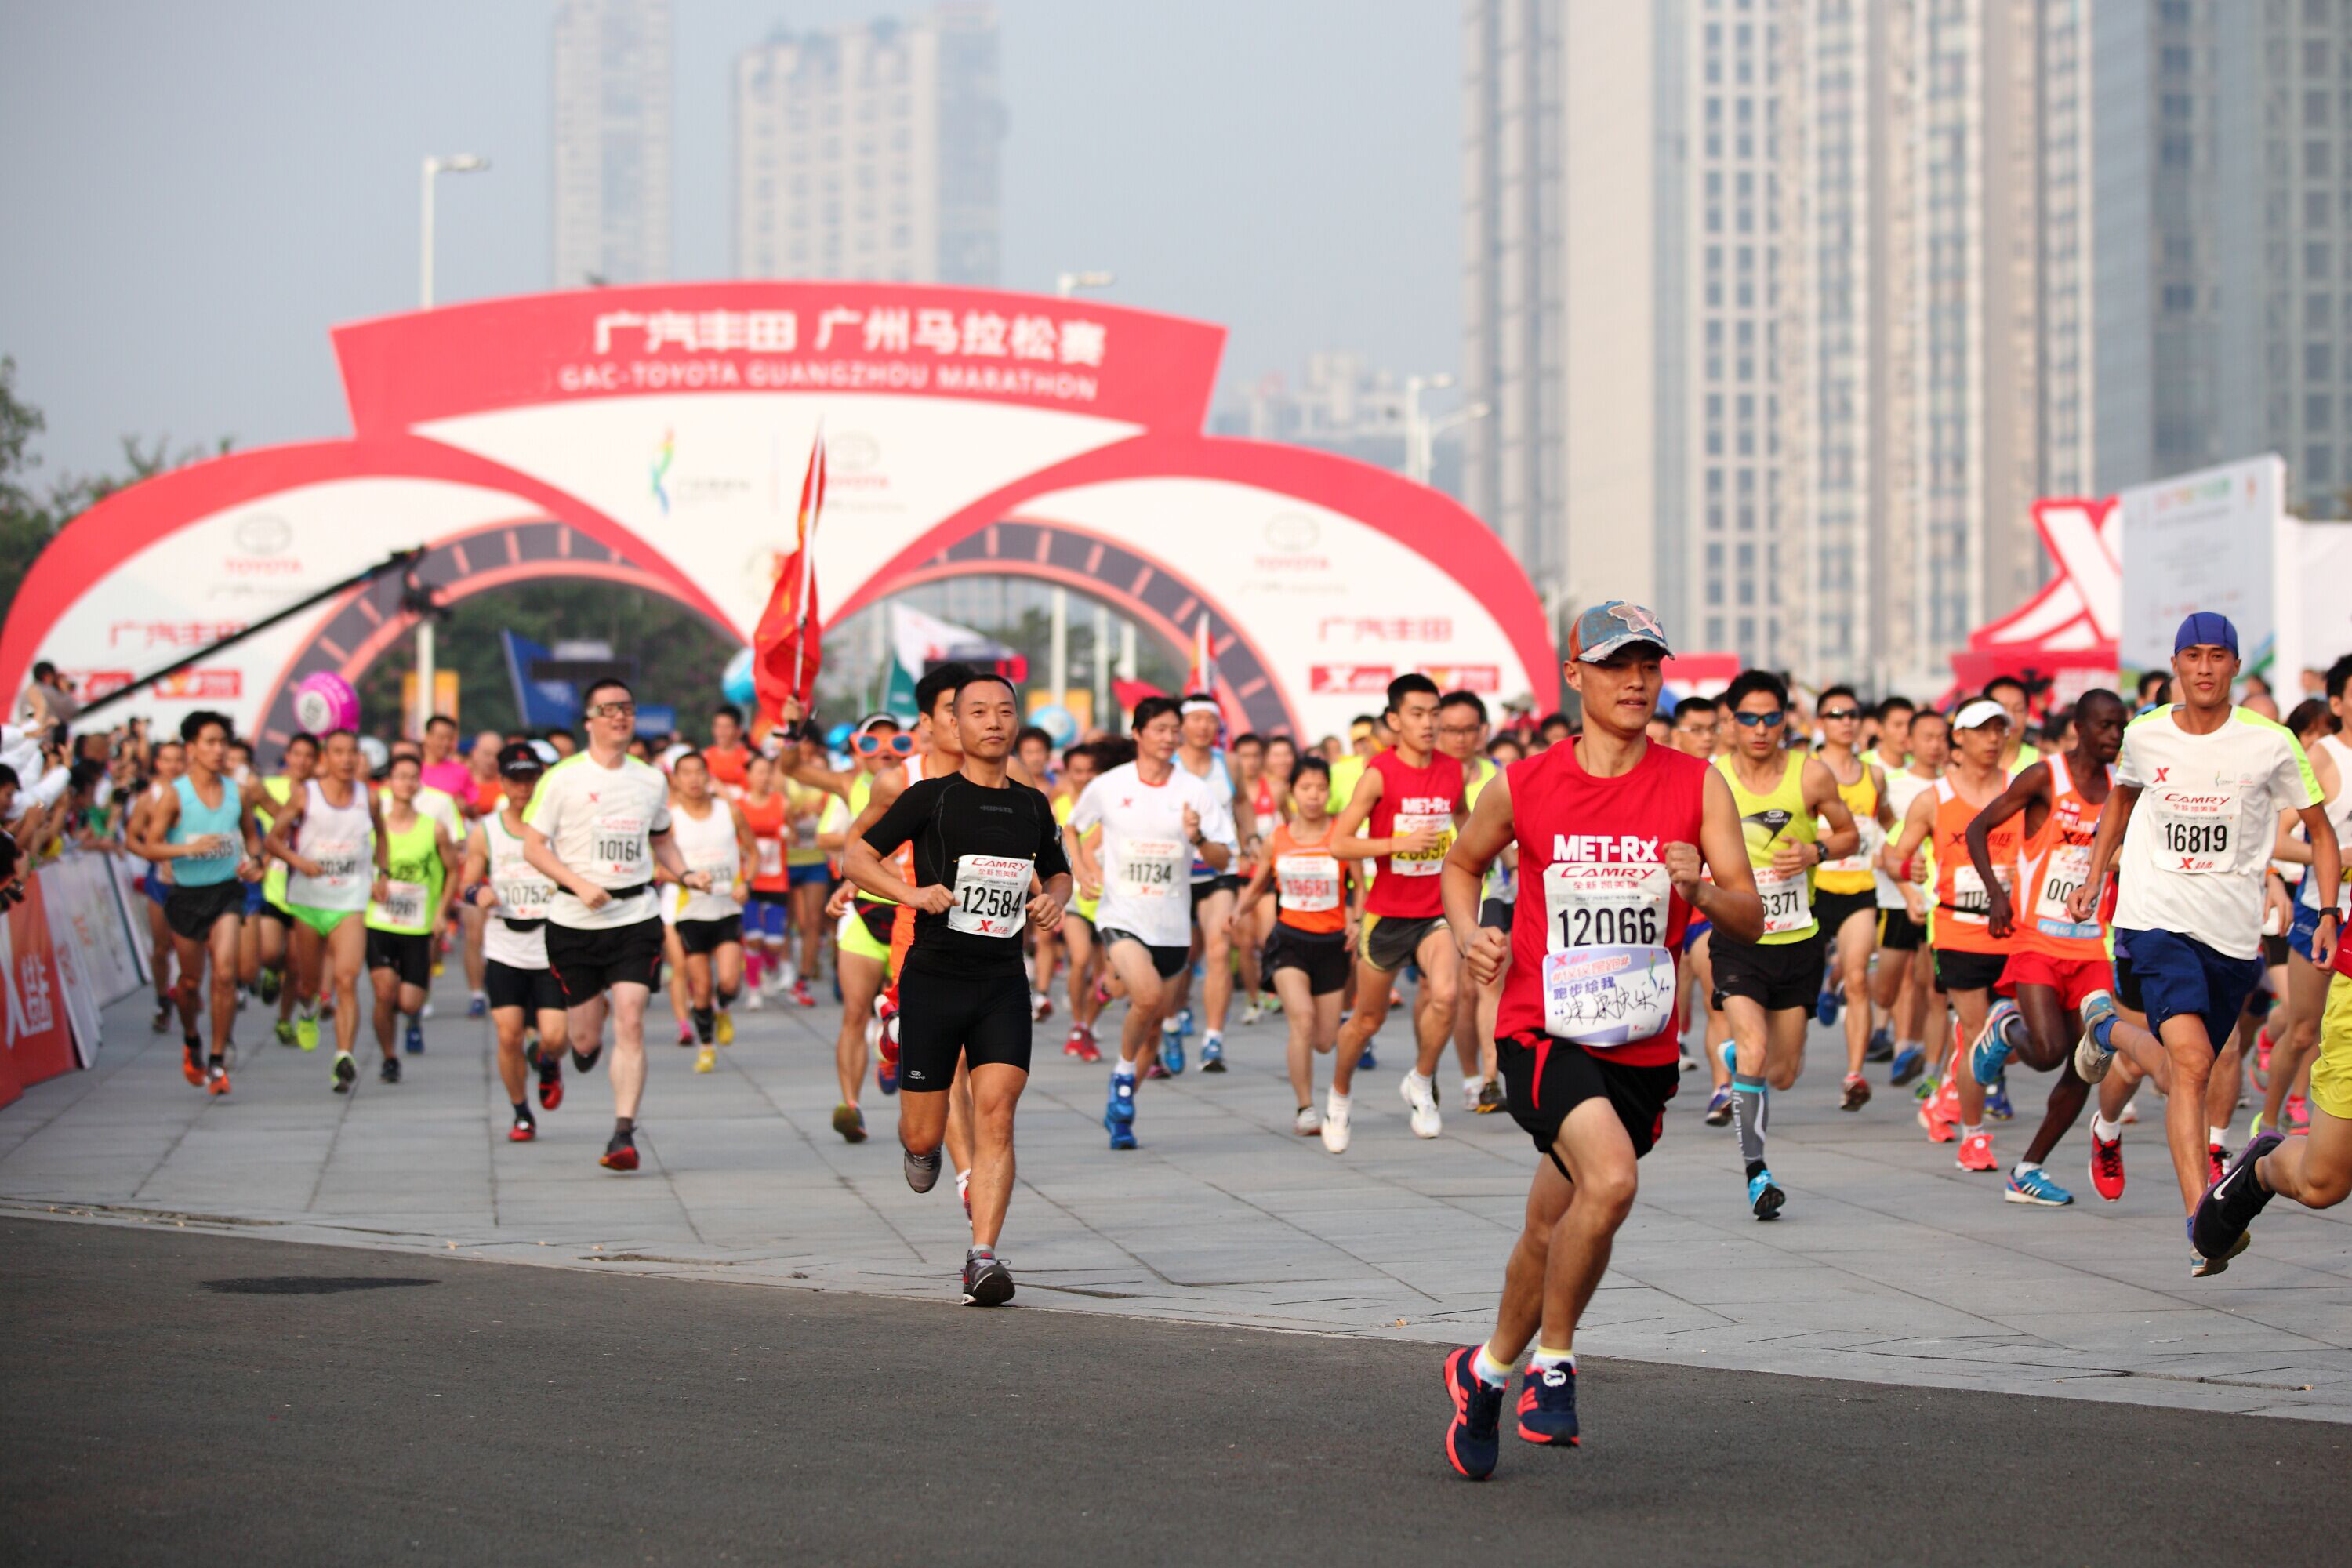 The Shenzhen International Marathon course record was broken on Sunday